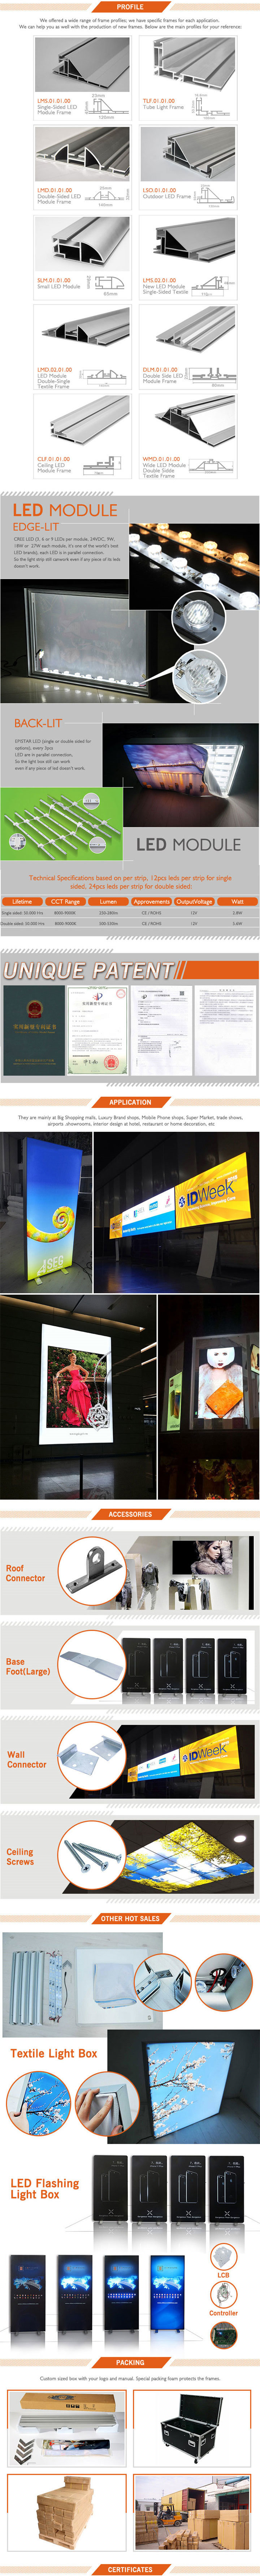 Clothing Store Windows LED Light Box Advertising Fabric Frame Light Box LED Light Box Panel